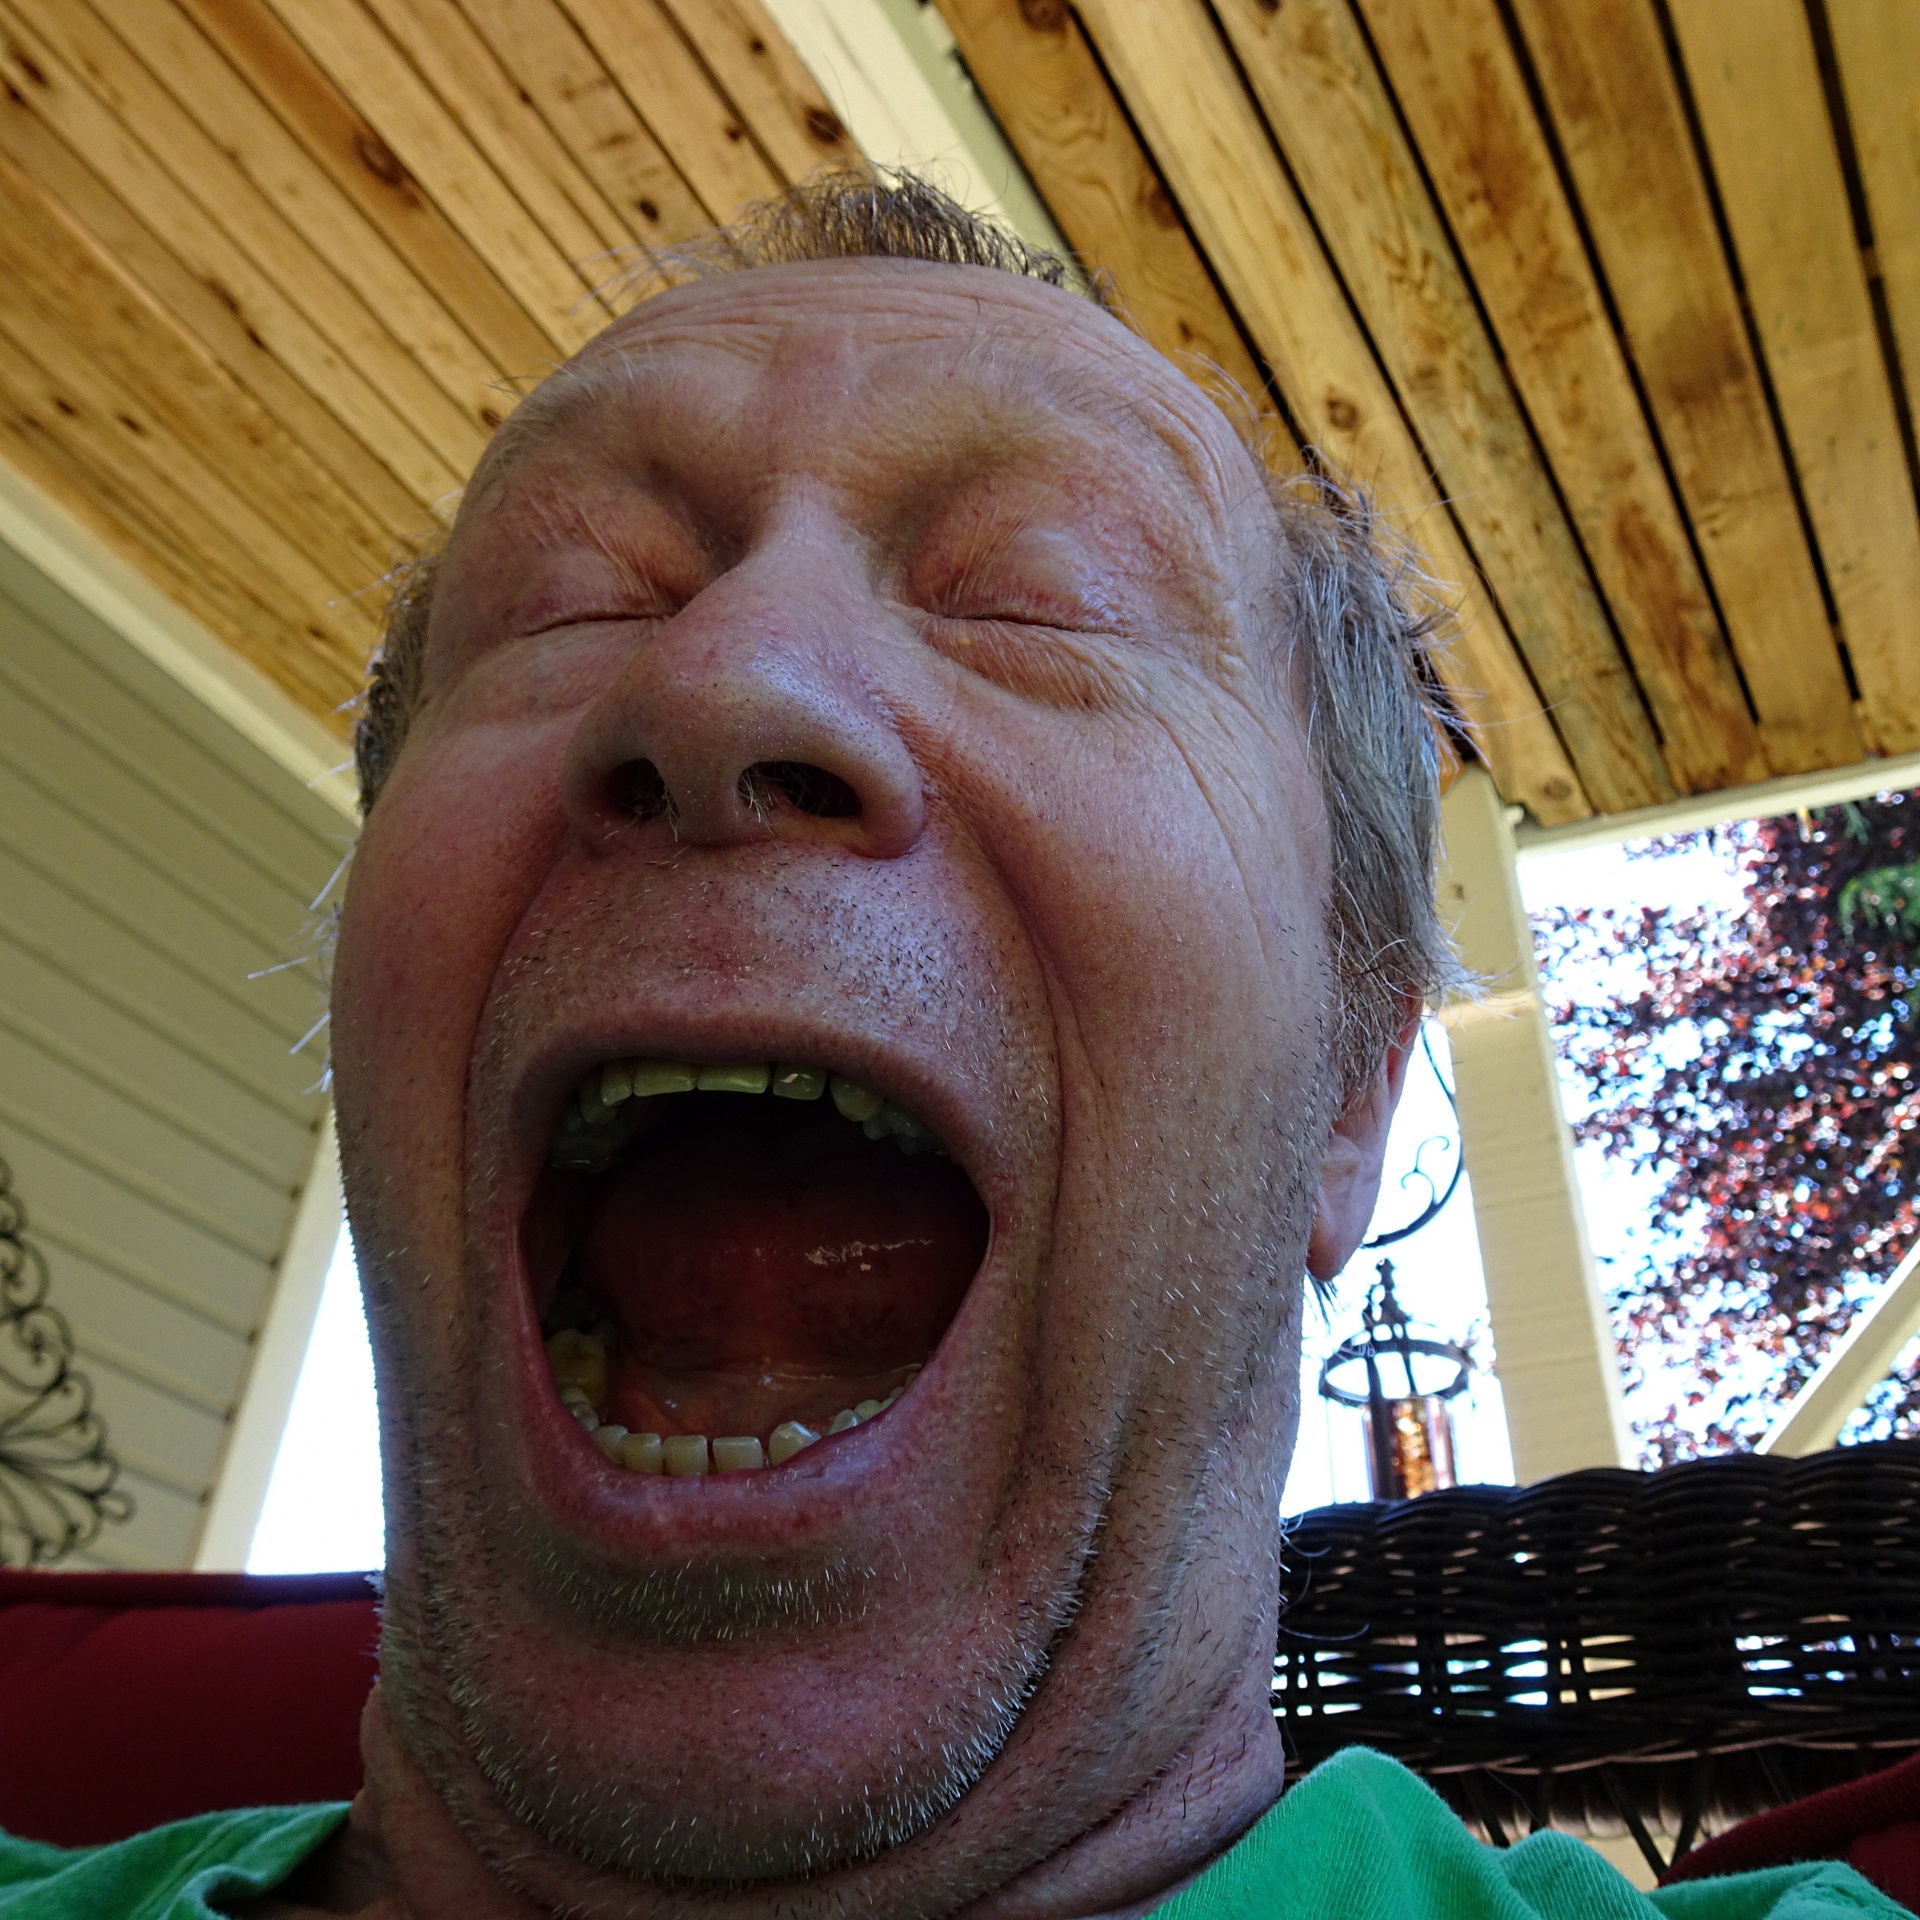 sneezing man closeup free photo